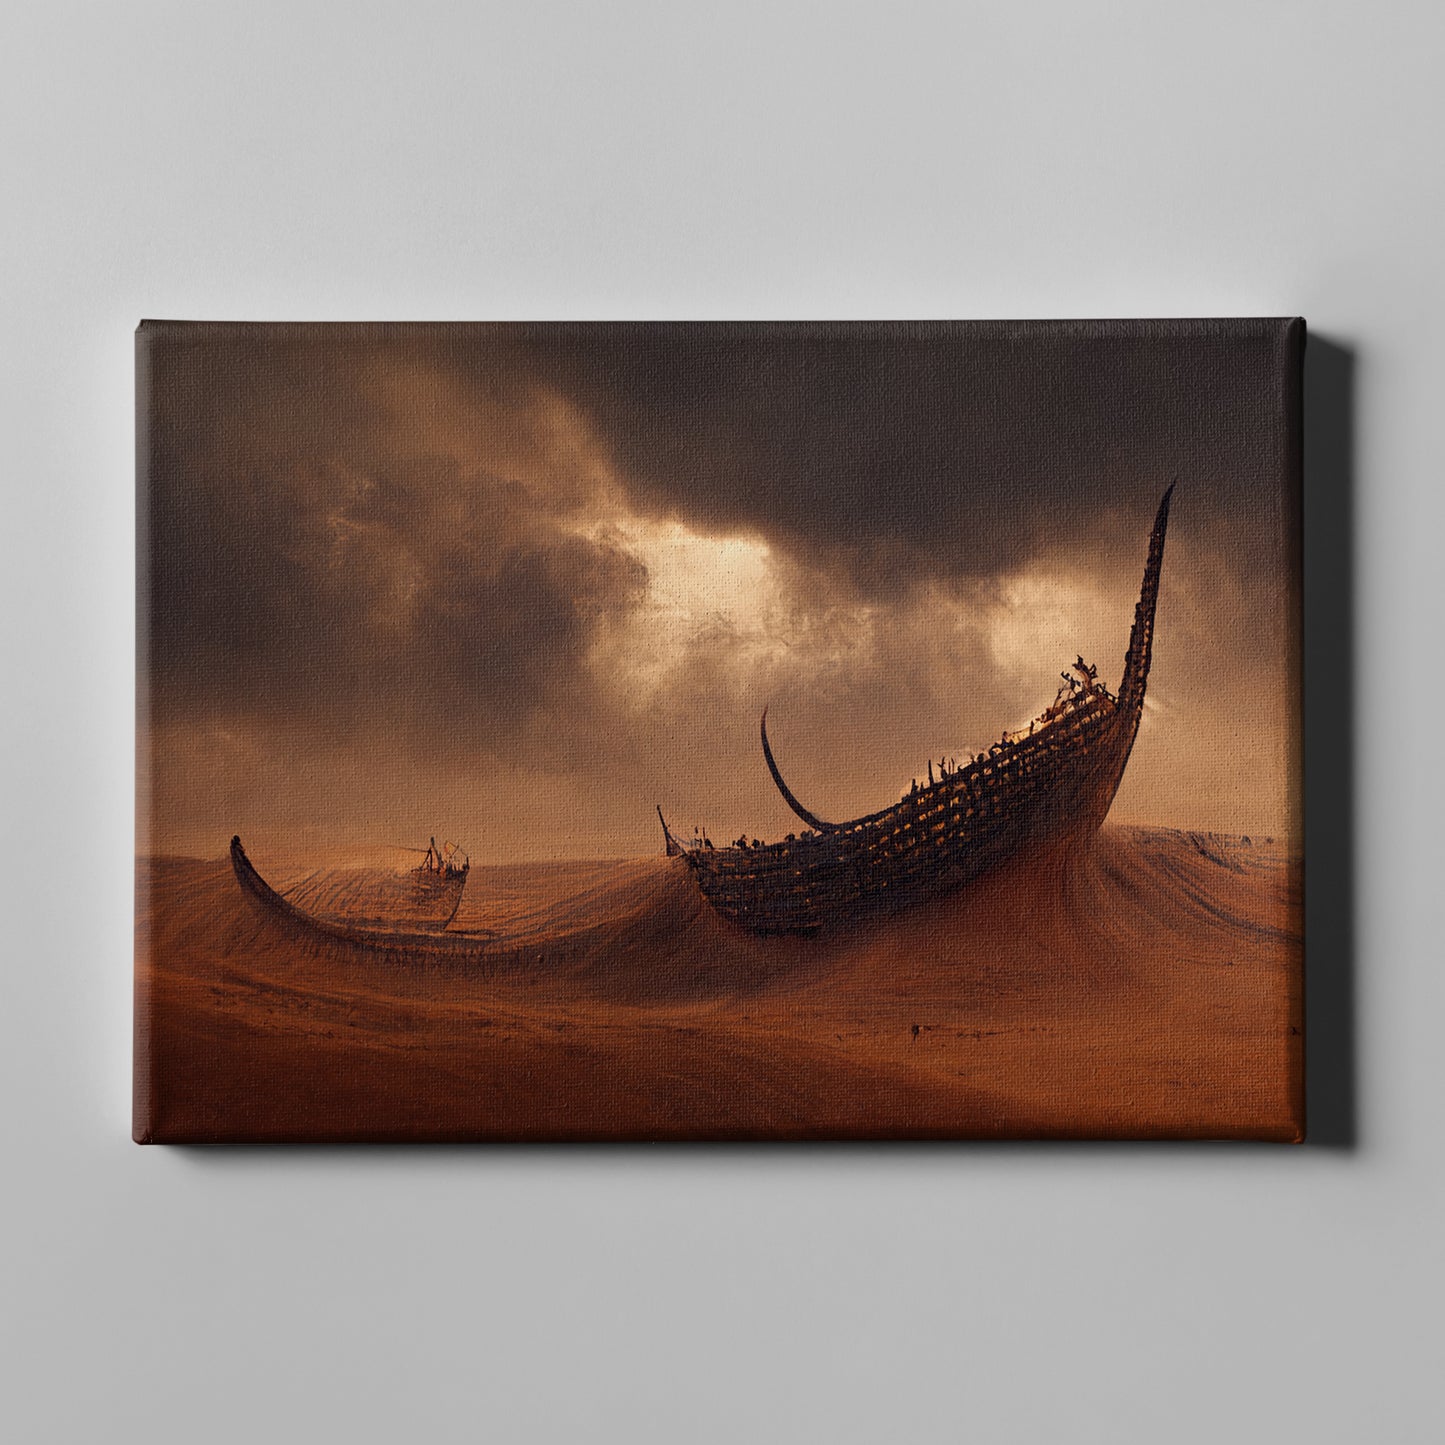 Ship in a desert